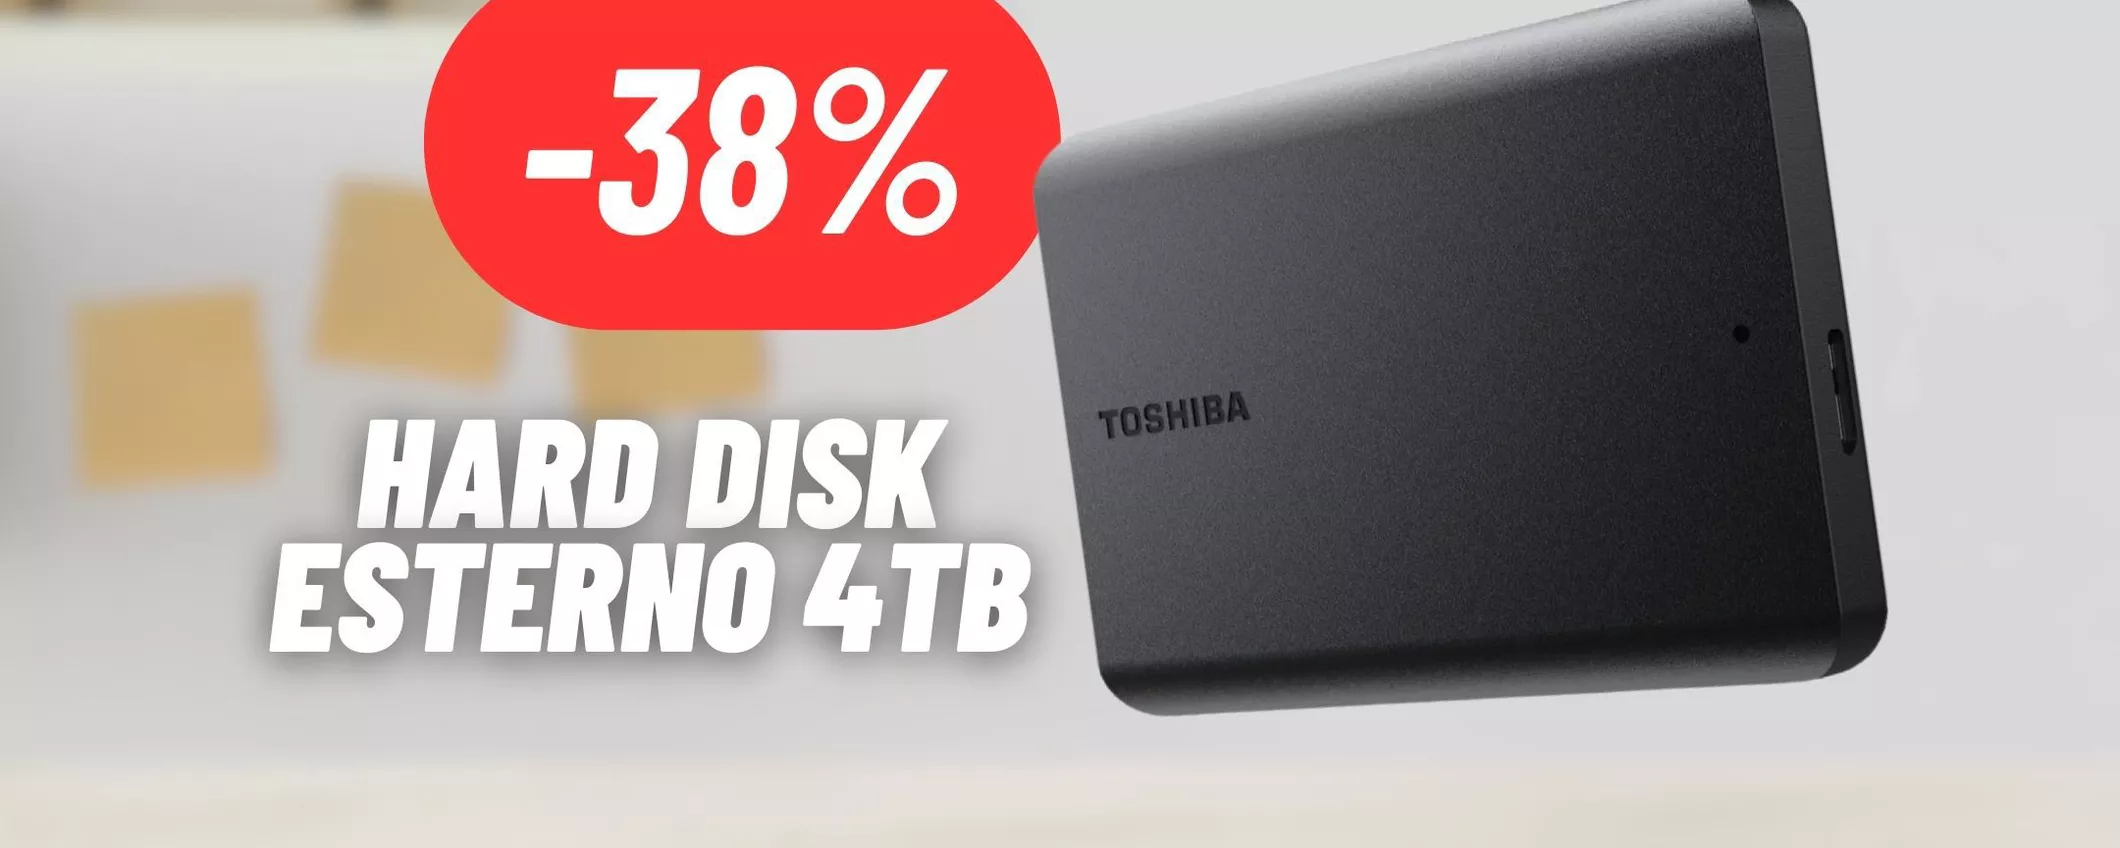 Hard disk esterno Toshiba da 4TB a meno di 100€: OFFERTA FOLLE